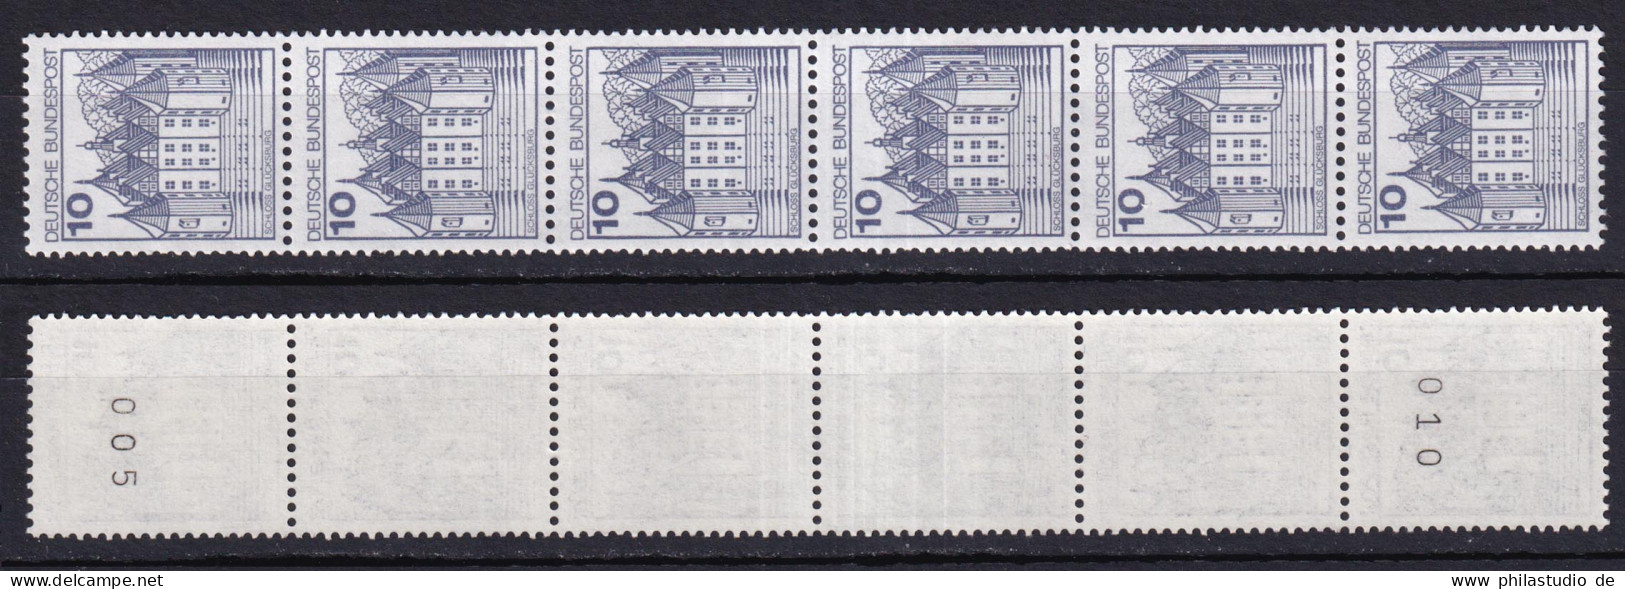 Bund 913 A RM 6er Streifen Burgen+Schlösser 10 Pf Postfrisch Neue Floureszenz - Rollenmarken